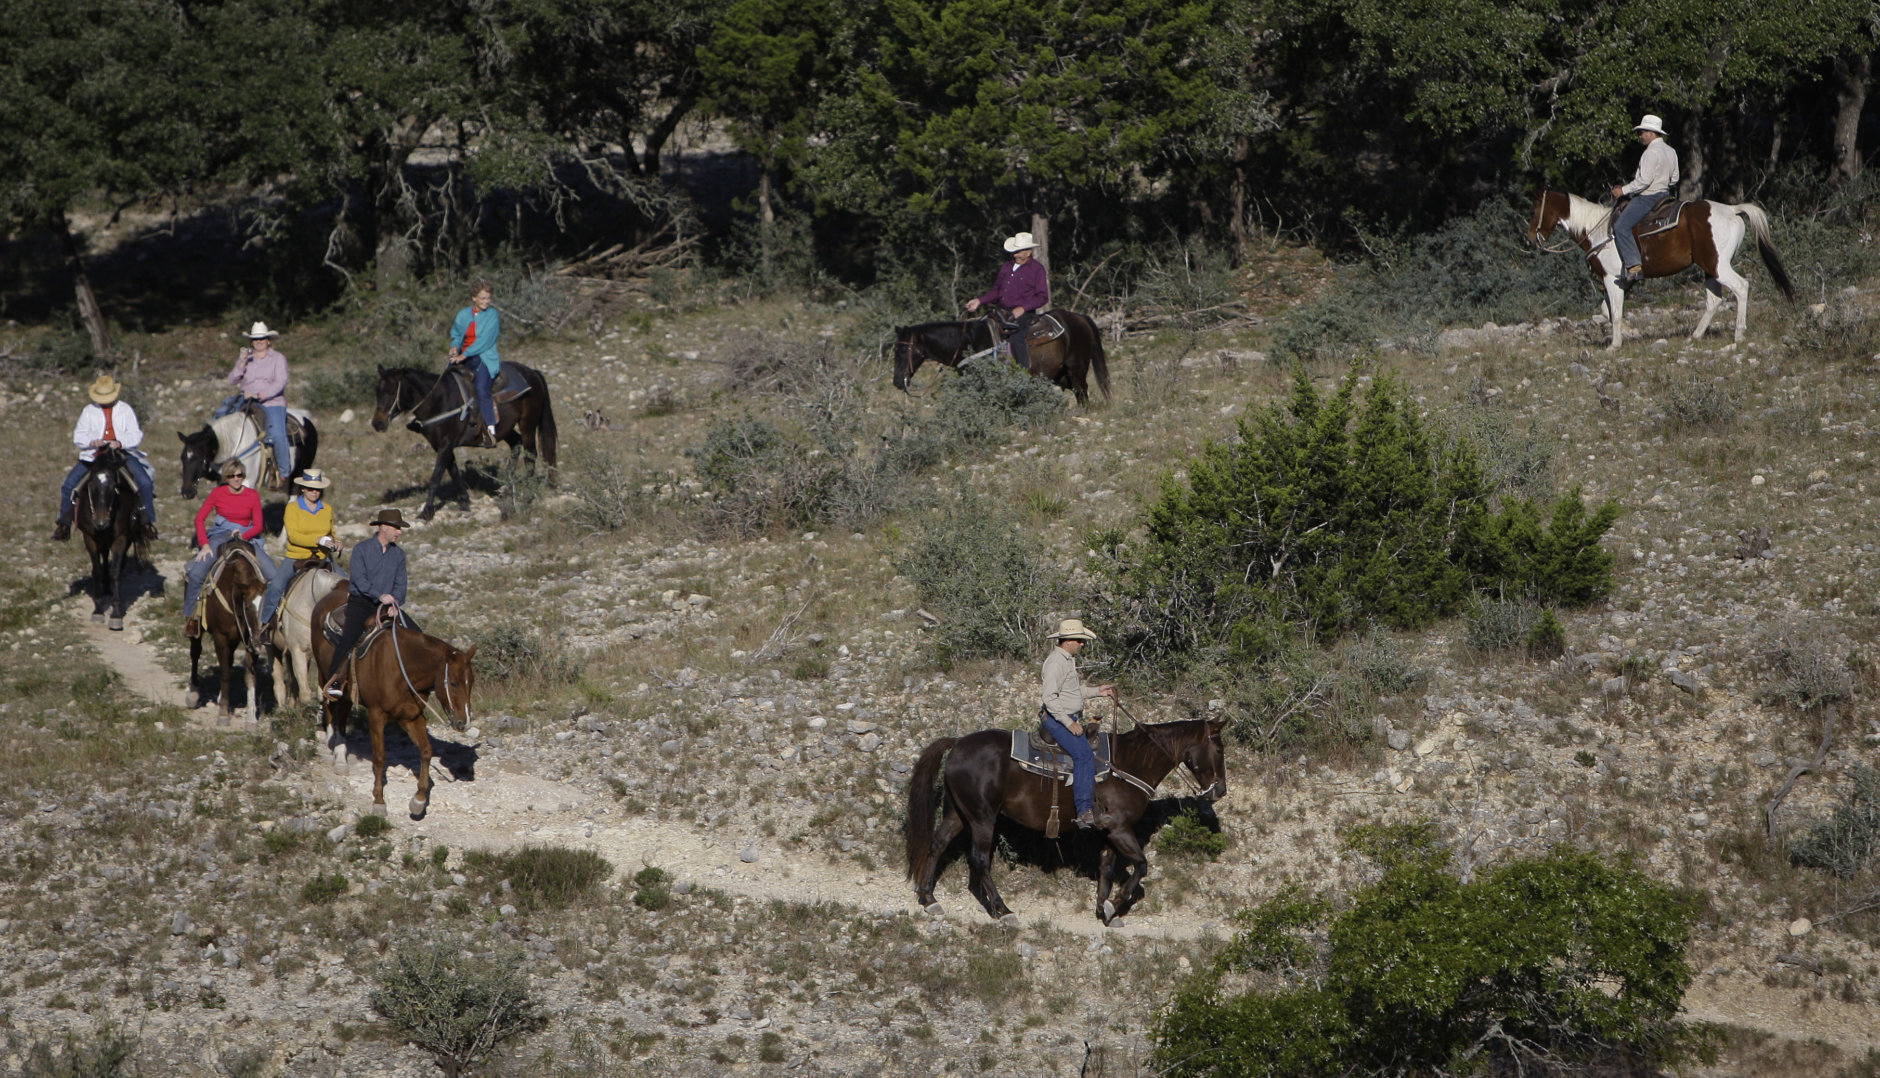 Visitors ride horses at the Dixie Dude Ranch near Bandera, Texas, Friday, Oct. 24, 2008.  (AP Photo/Eric Gay)